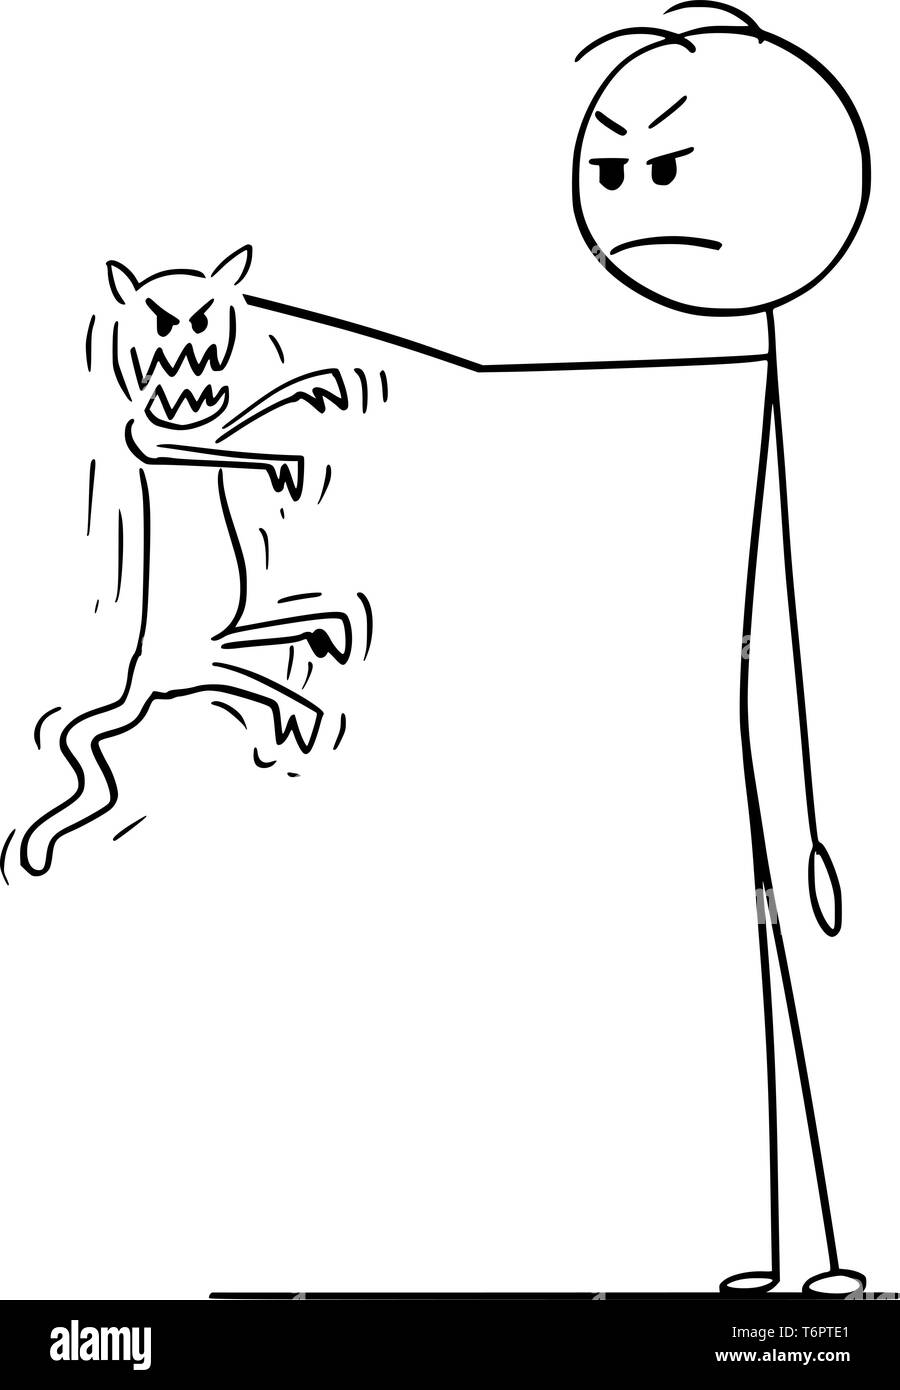 Cartoon stick figura disegno illustrazione concettuale dell'uomo tenendo in mano arrabbiato e aggressivo gatto cercando di morso e lo scratch. Illustrazione Vettoriale